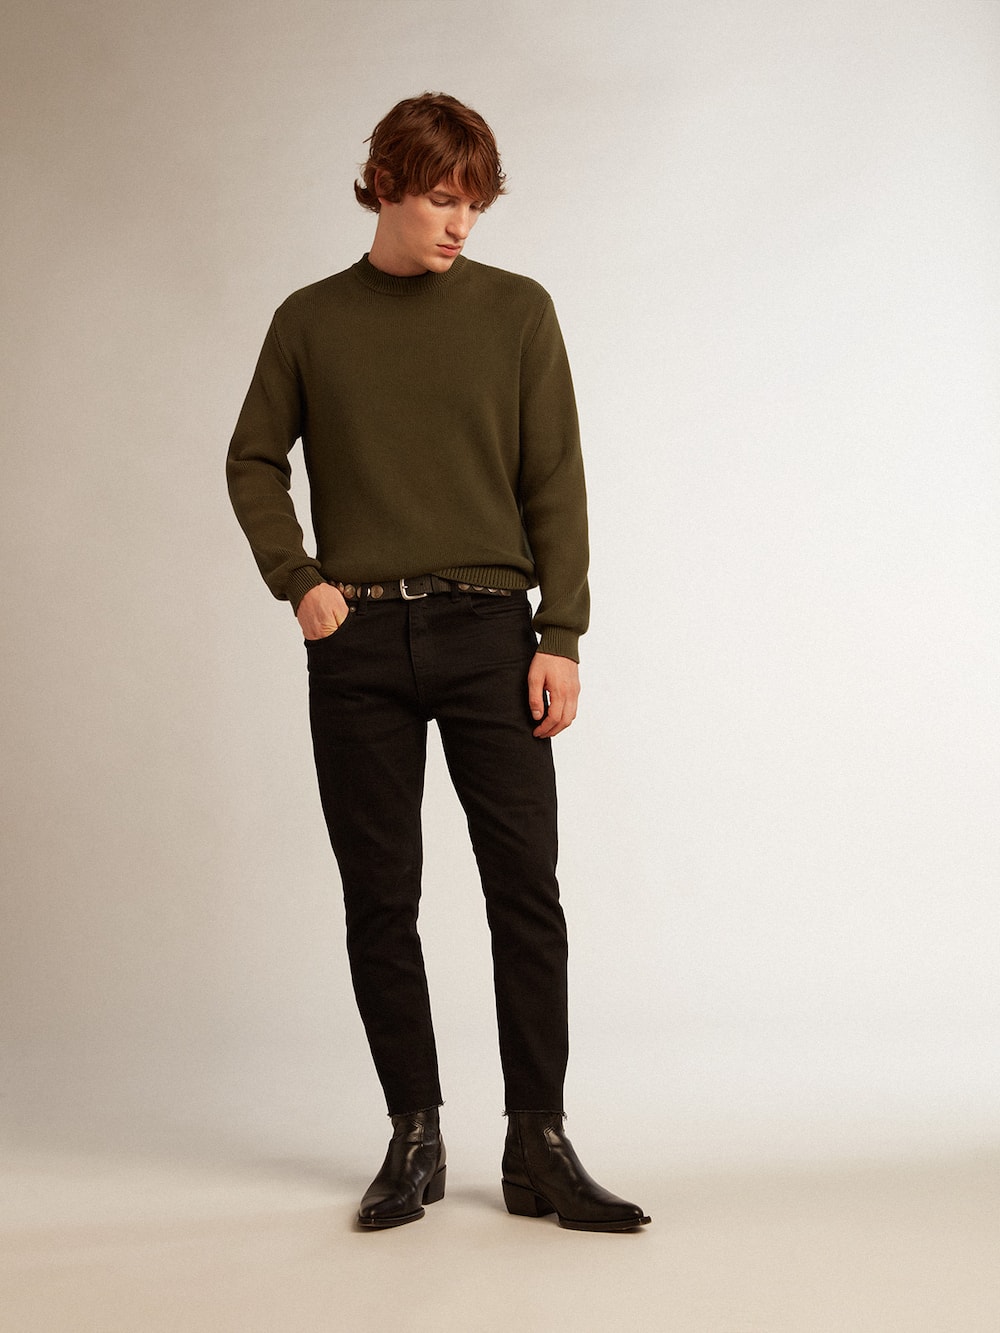 Golden Goose - Calça jeans masculina skinny preta in 